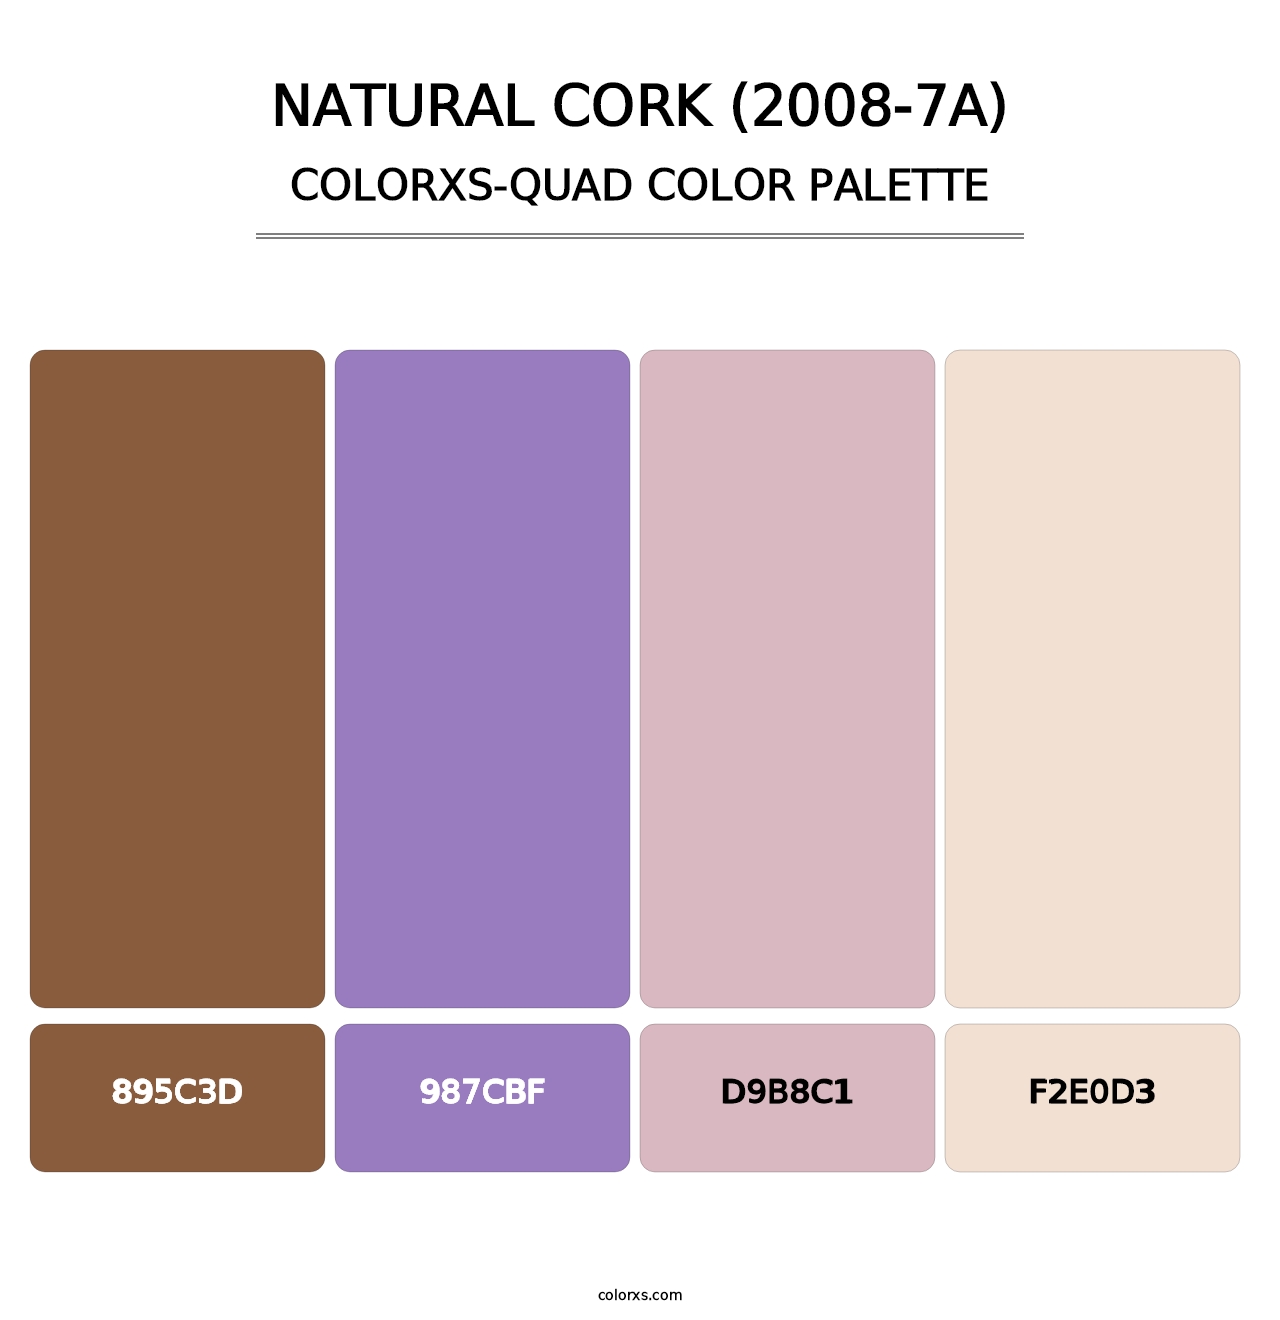 Natural Cork (2008-7A) - Colorxs Quad Palette